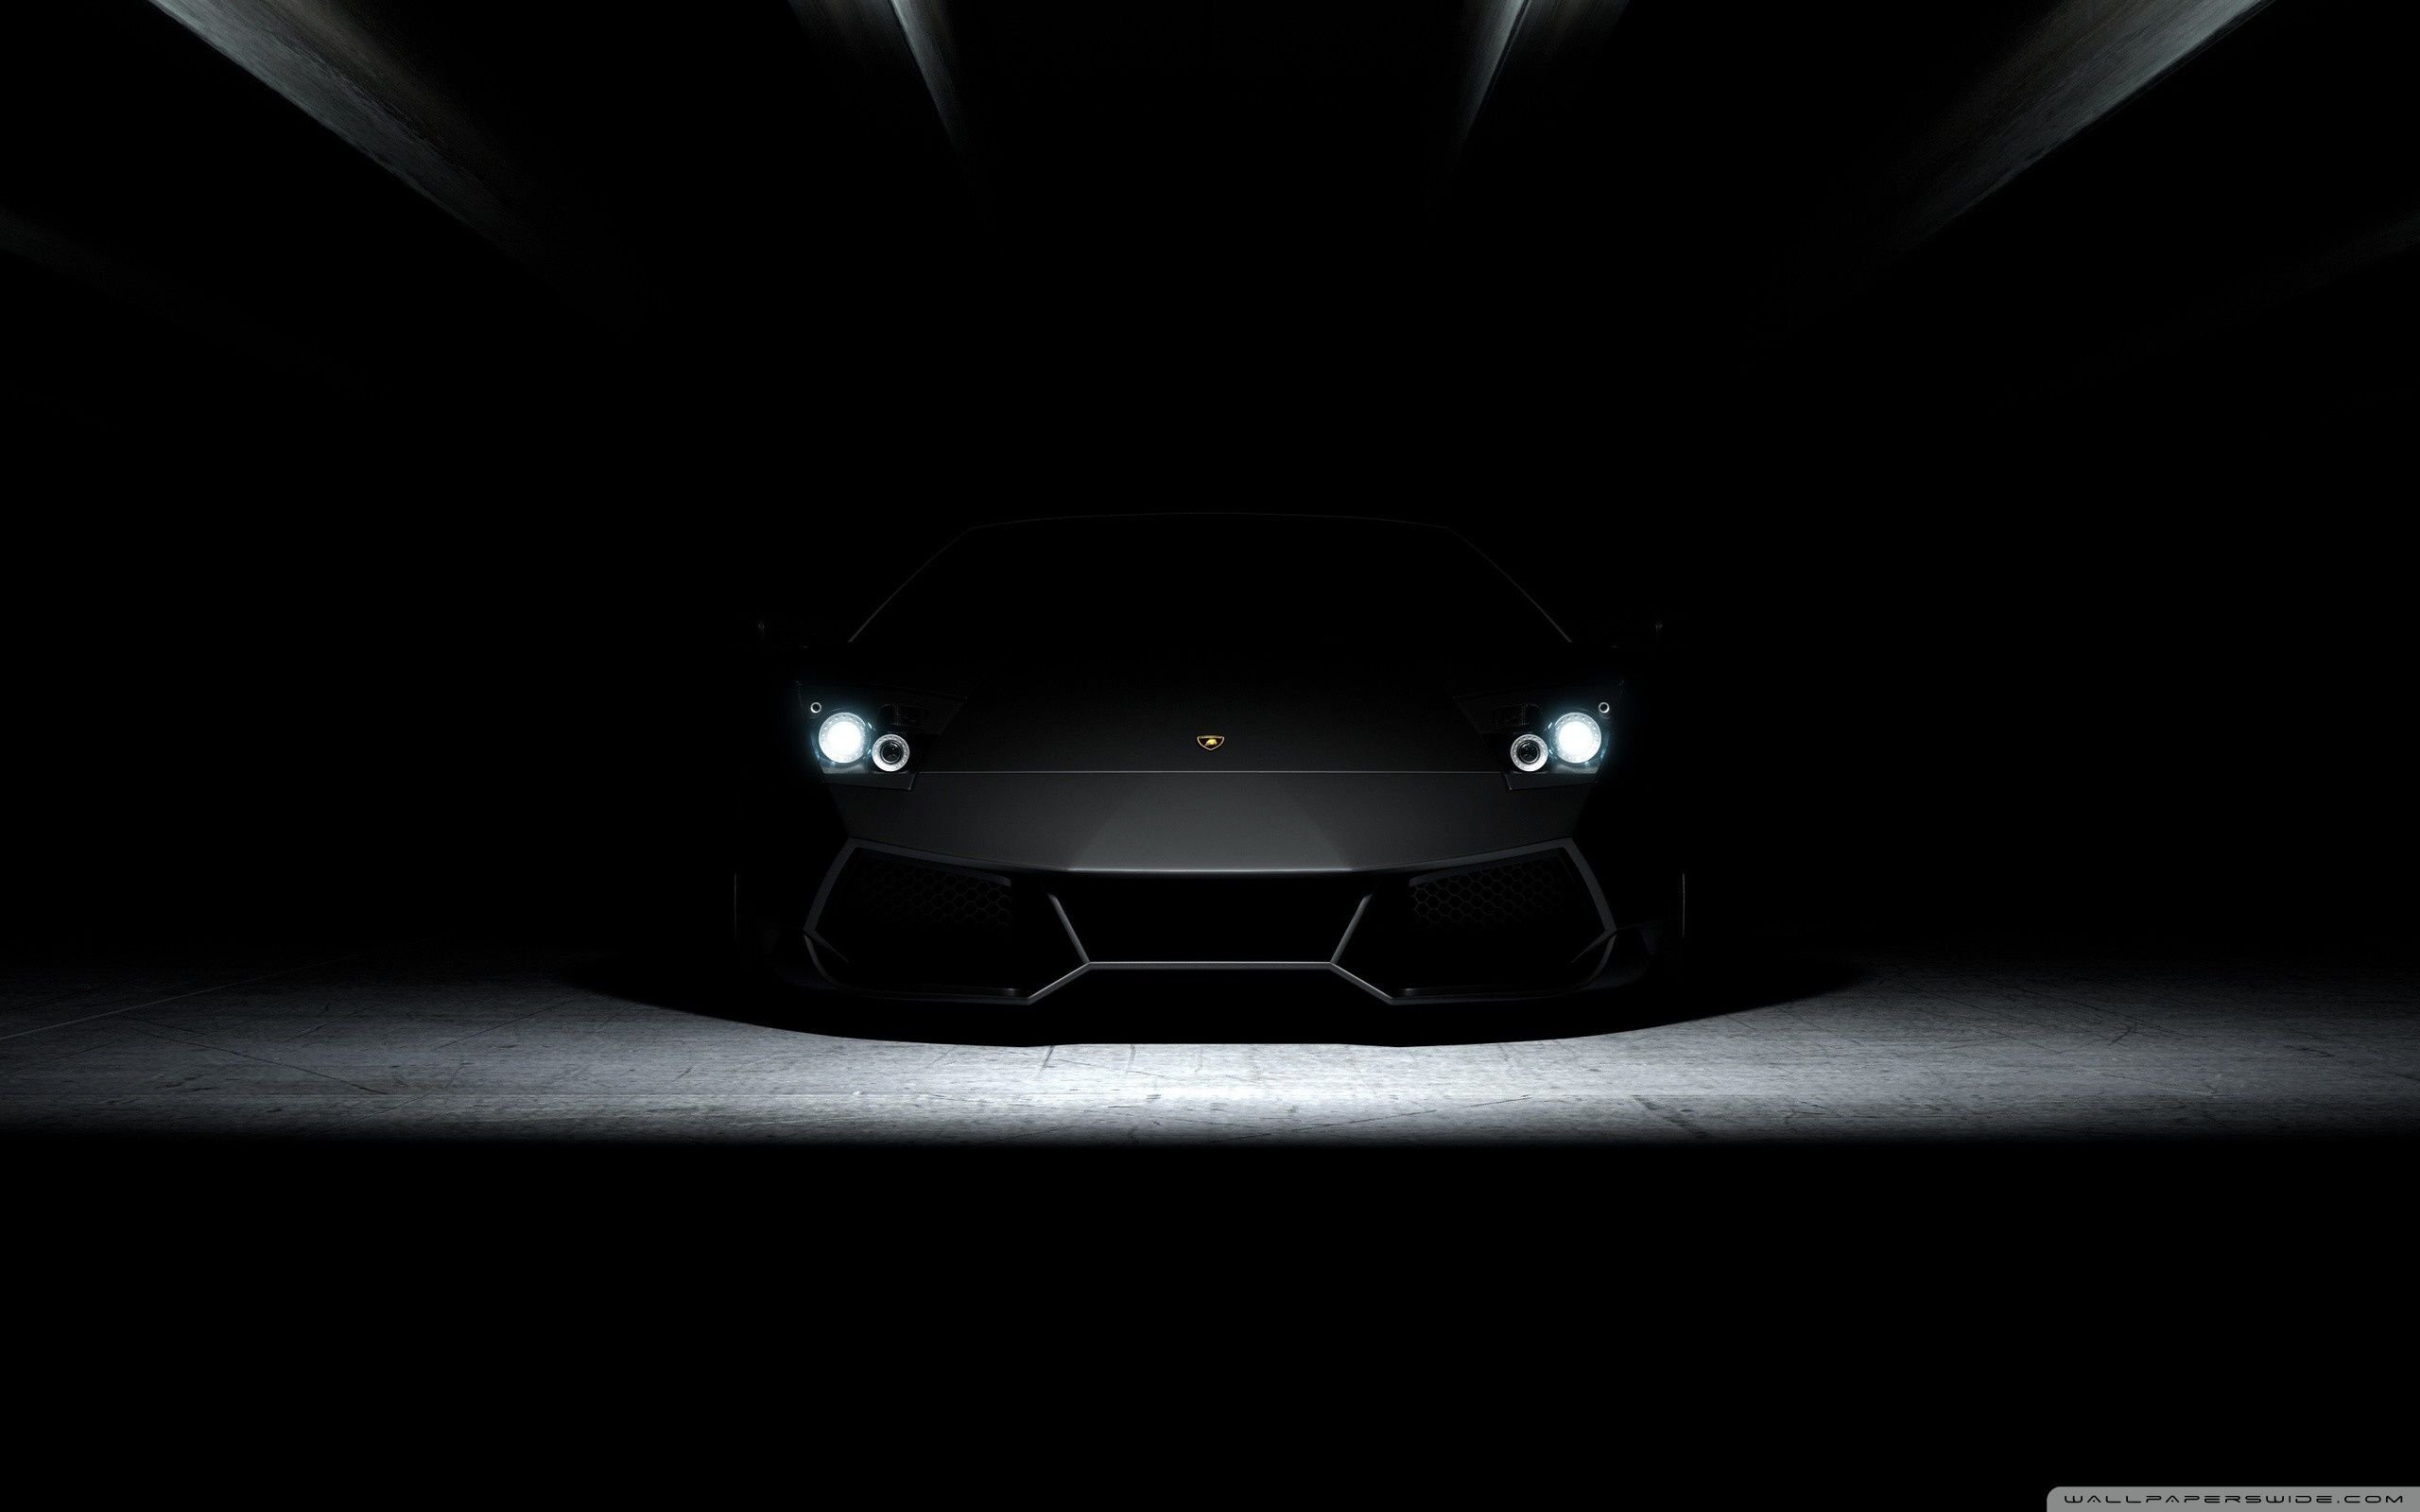 Nếu bạn đam mê siêu xe và muốn một hình nền Lamborghini cực đẹp 4K để thể hiện đẳng cấp và phong cách, thì bạn đã đến đúng nơi rồi. Hãy trải nghiệm hình ảnh đẹp nhất của siêu xe Lamborghini với chất lượng 4K và màu sắc sáng đẹp để cảm nhận vẻ đẹp tuyệt vời của nó.